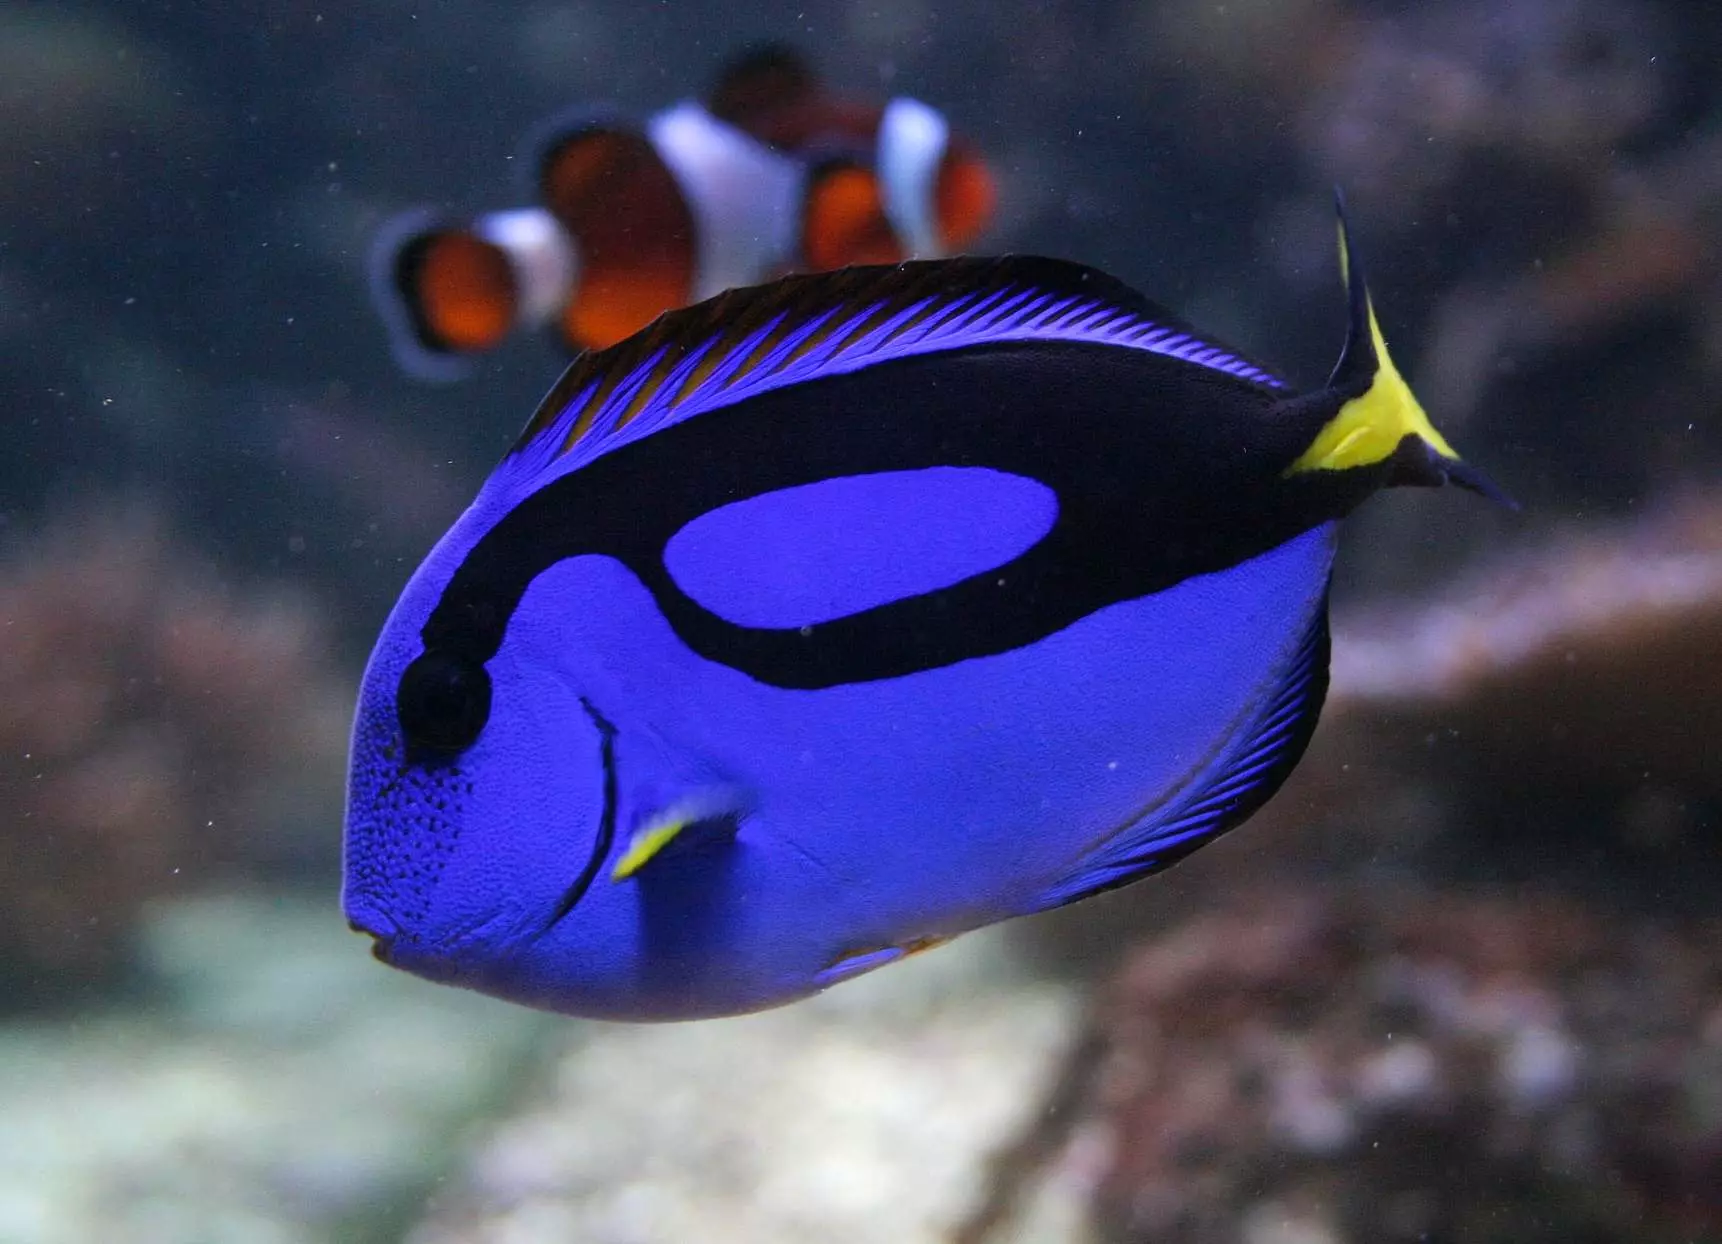 Balık Mandarin (16 fotoğraflar): Akvaryum balıklarının tanımı, akvaryumdaki içeriğinin özellikleri 22287_10